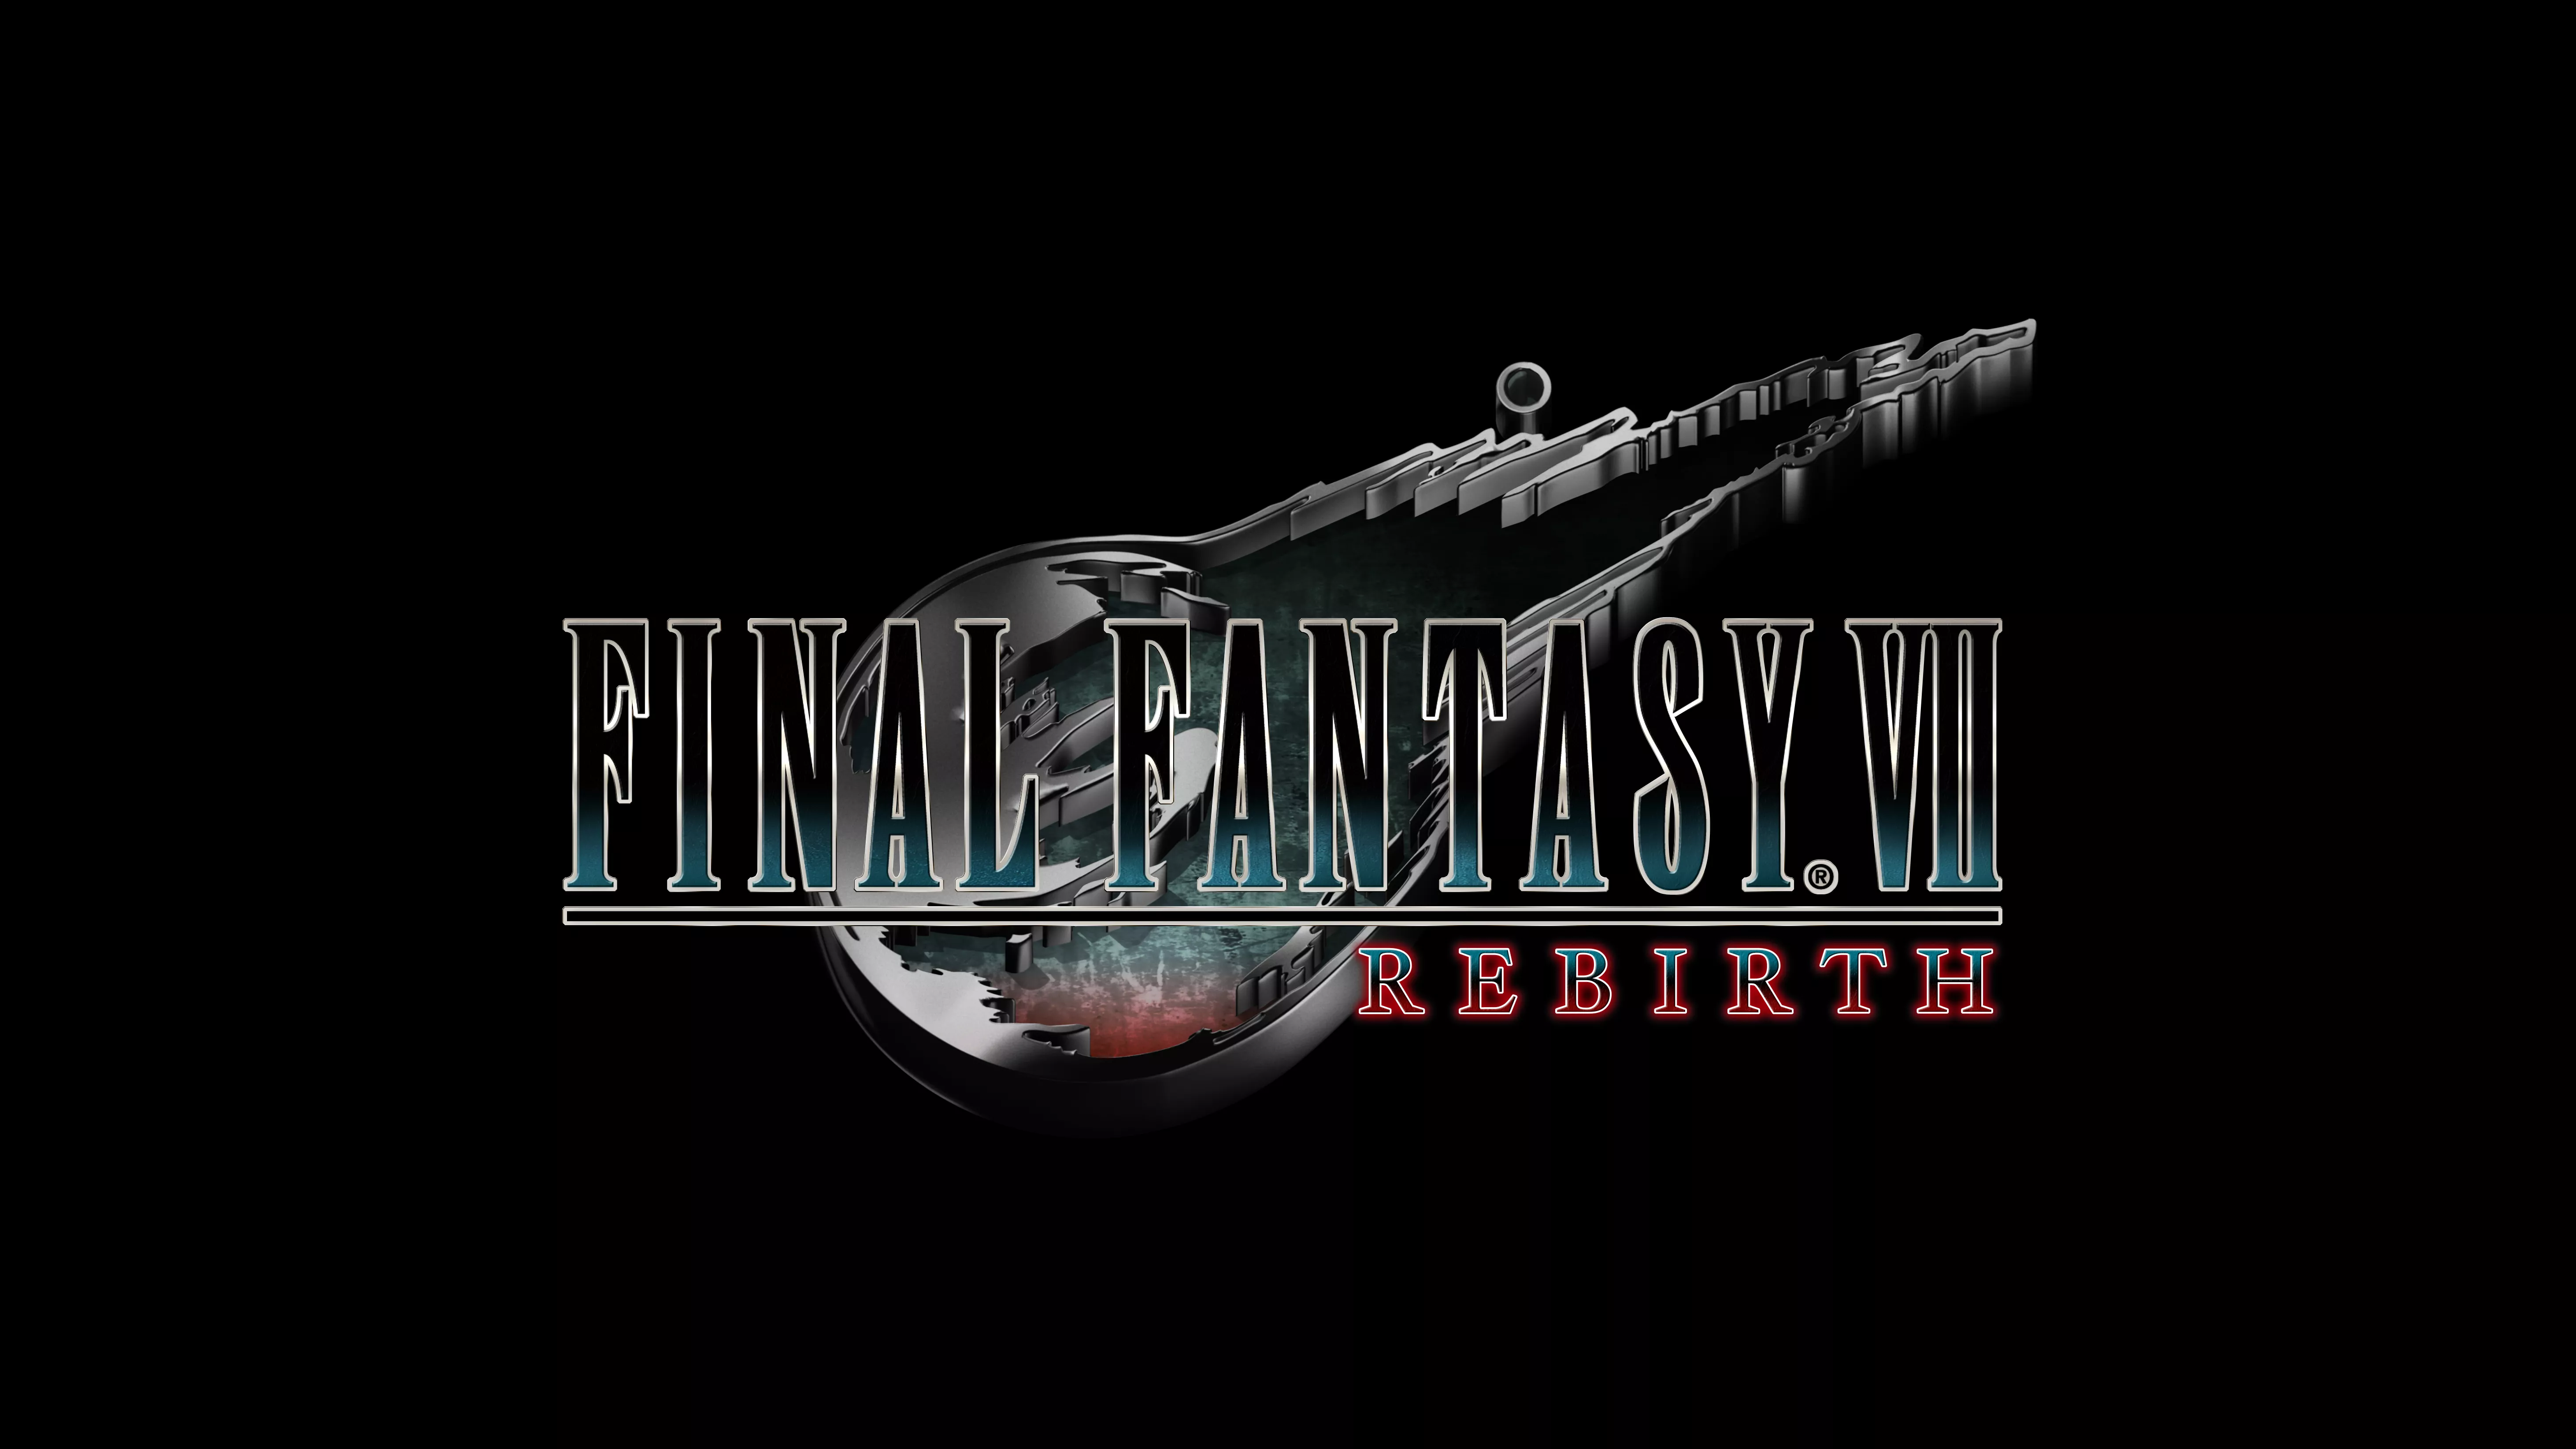 Final Fantasy VII Rebirth setzt die Remake-Trilogie fort  Heropic